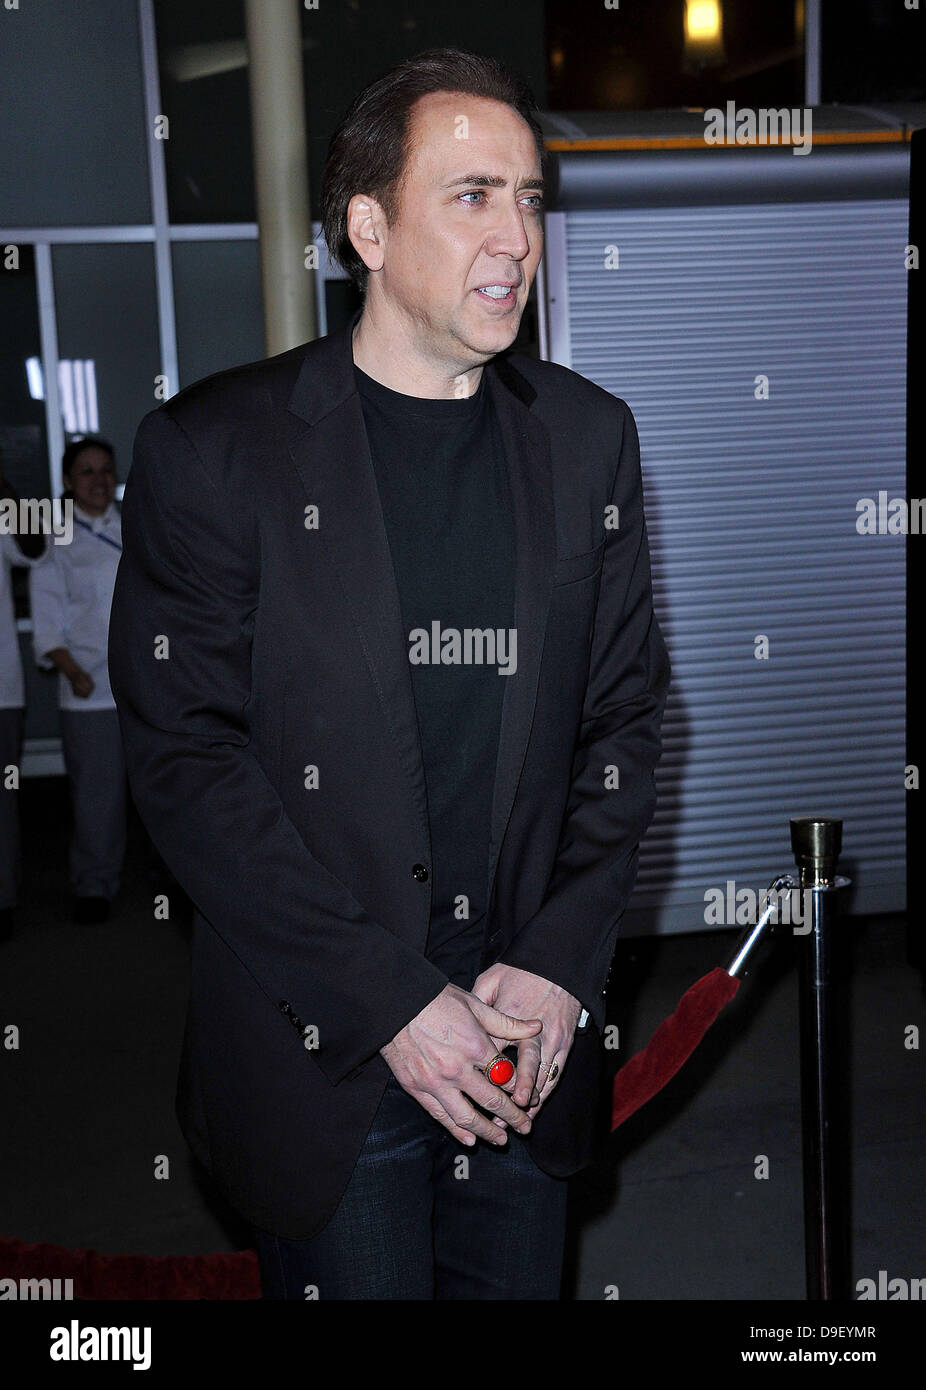 Nicolas Cage Los Angeles Screening von "Drive Angry" anlässlich der ArcLight Hollywood Theatre Los Angeles, Kalifornien - 22.02.11 Stockfoto